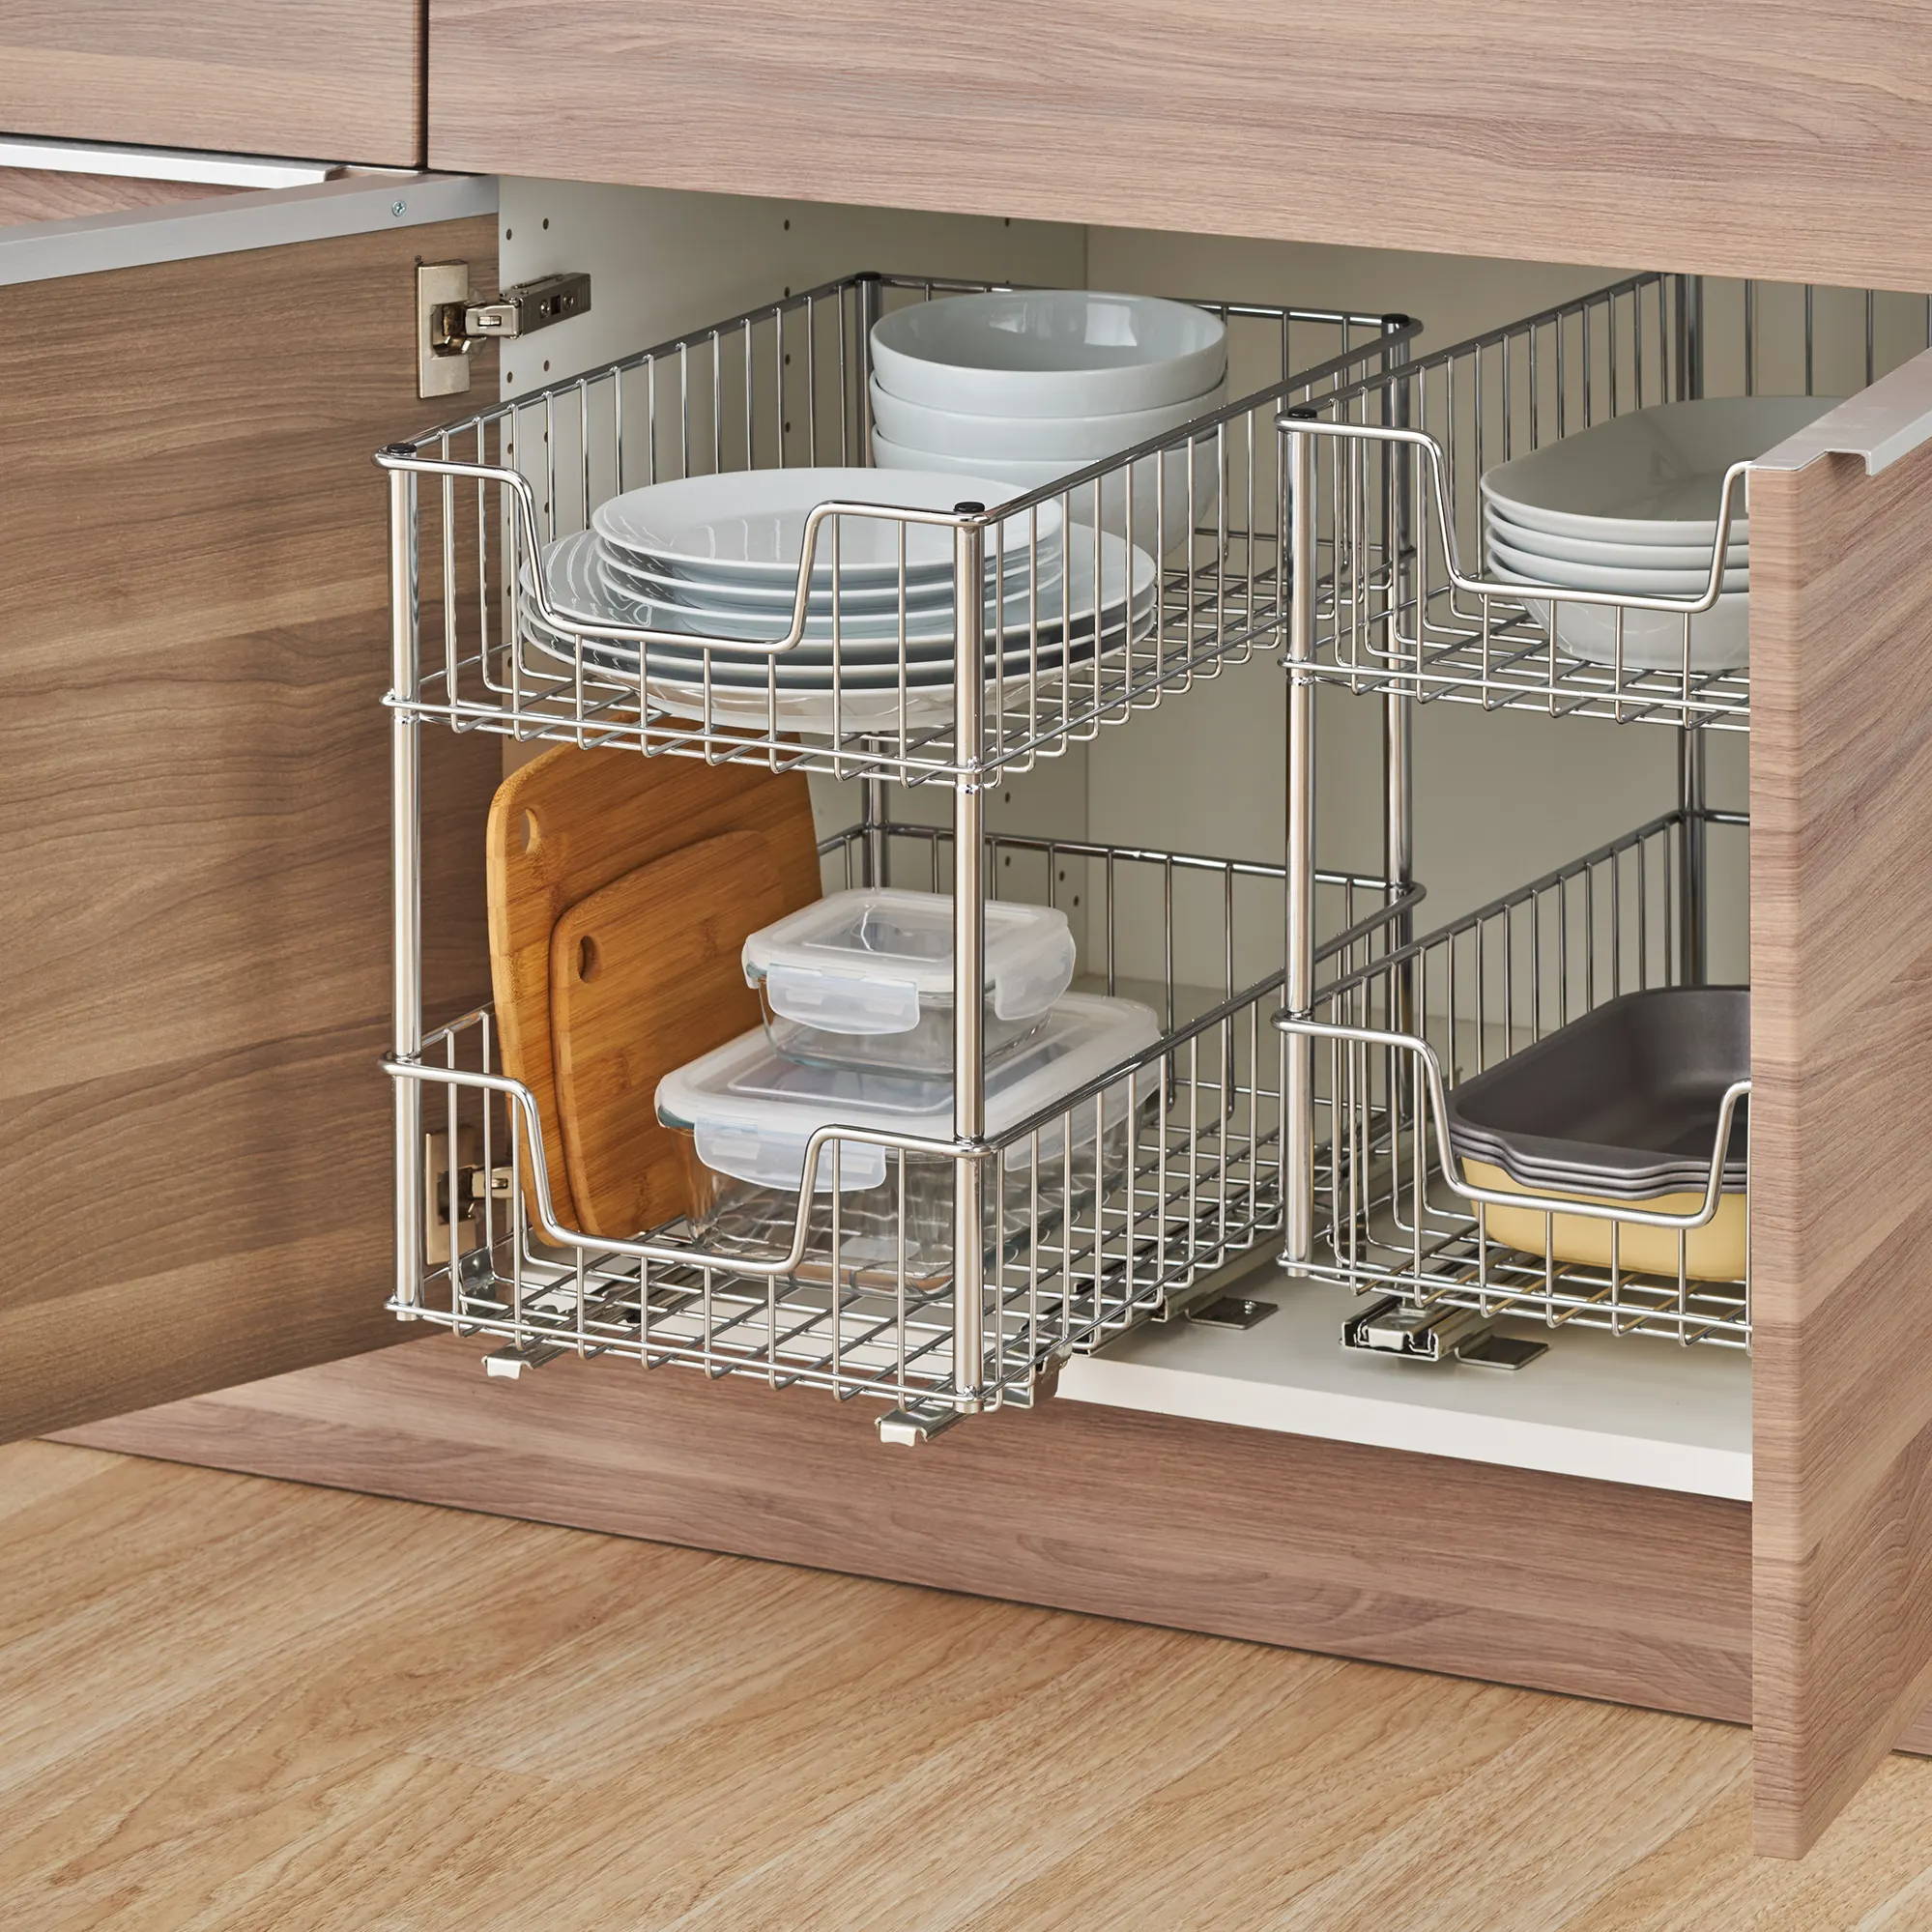 2 tier wire drawer kitchen organizer